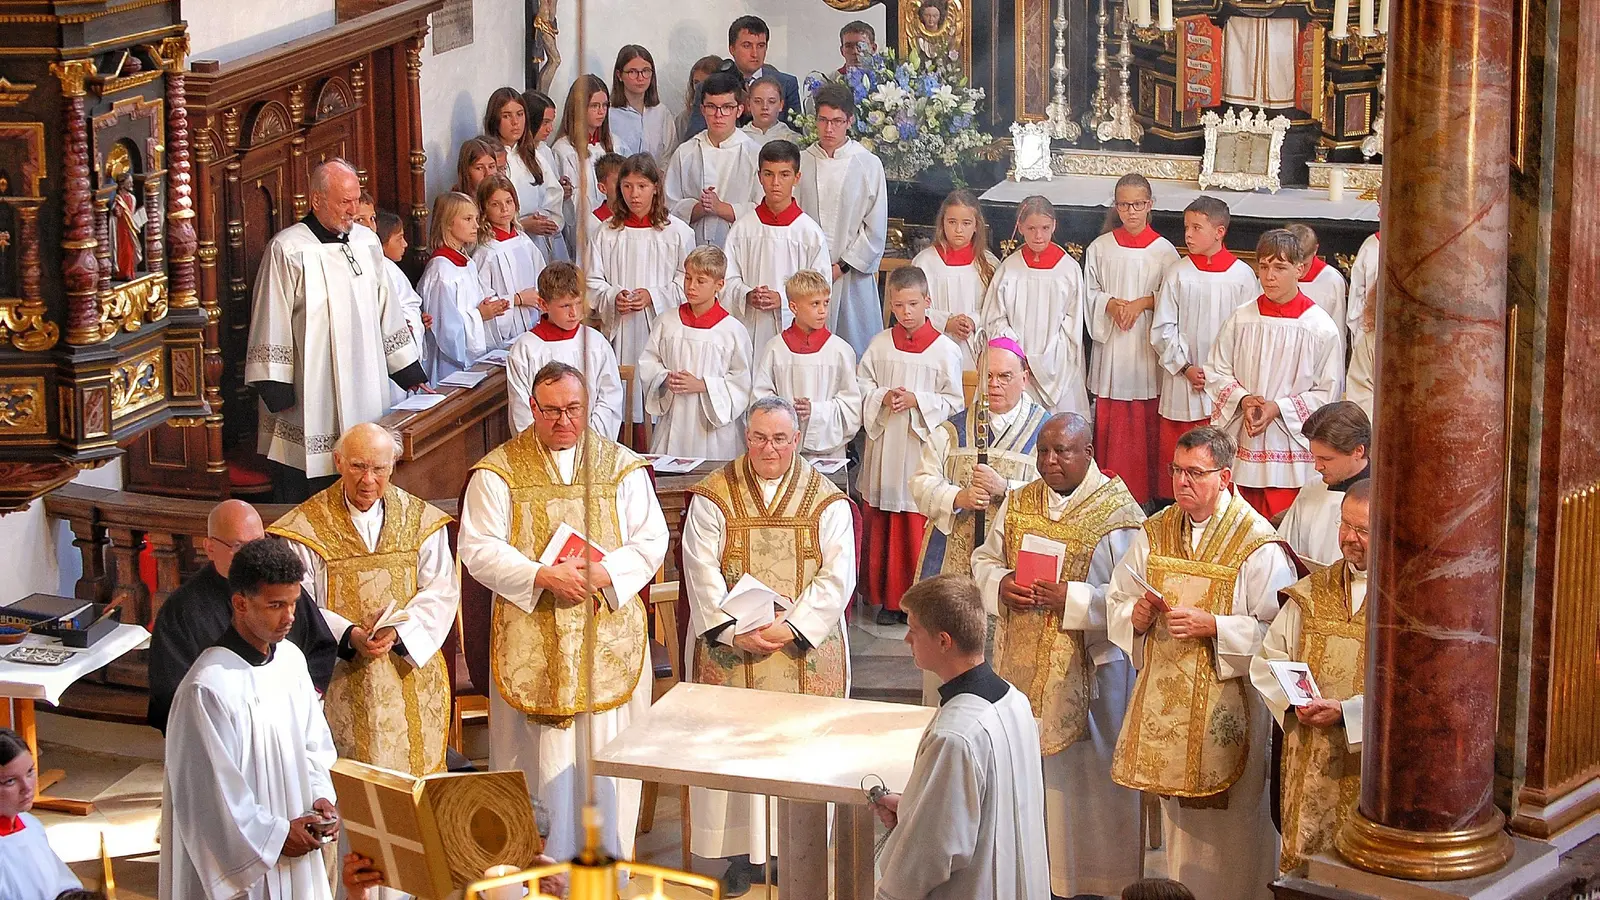 Die Altarweihe verlief nach dem vorgegebenen Ritus der römisch-katholischen Kirche. Links neben dem Bischof der Hausherr, Pfarrer Michael Menzinger.  (Foto: Thomas Floerecke)